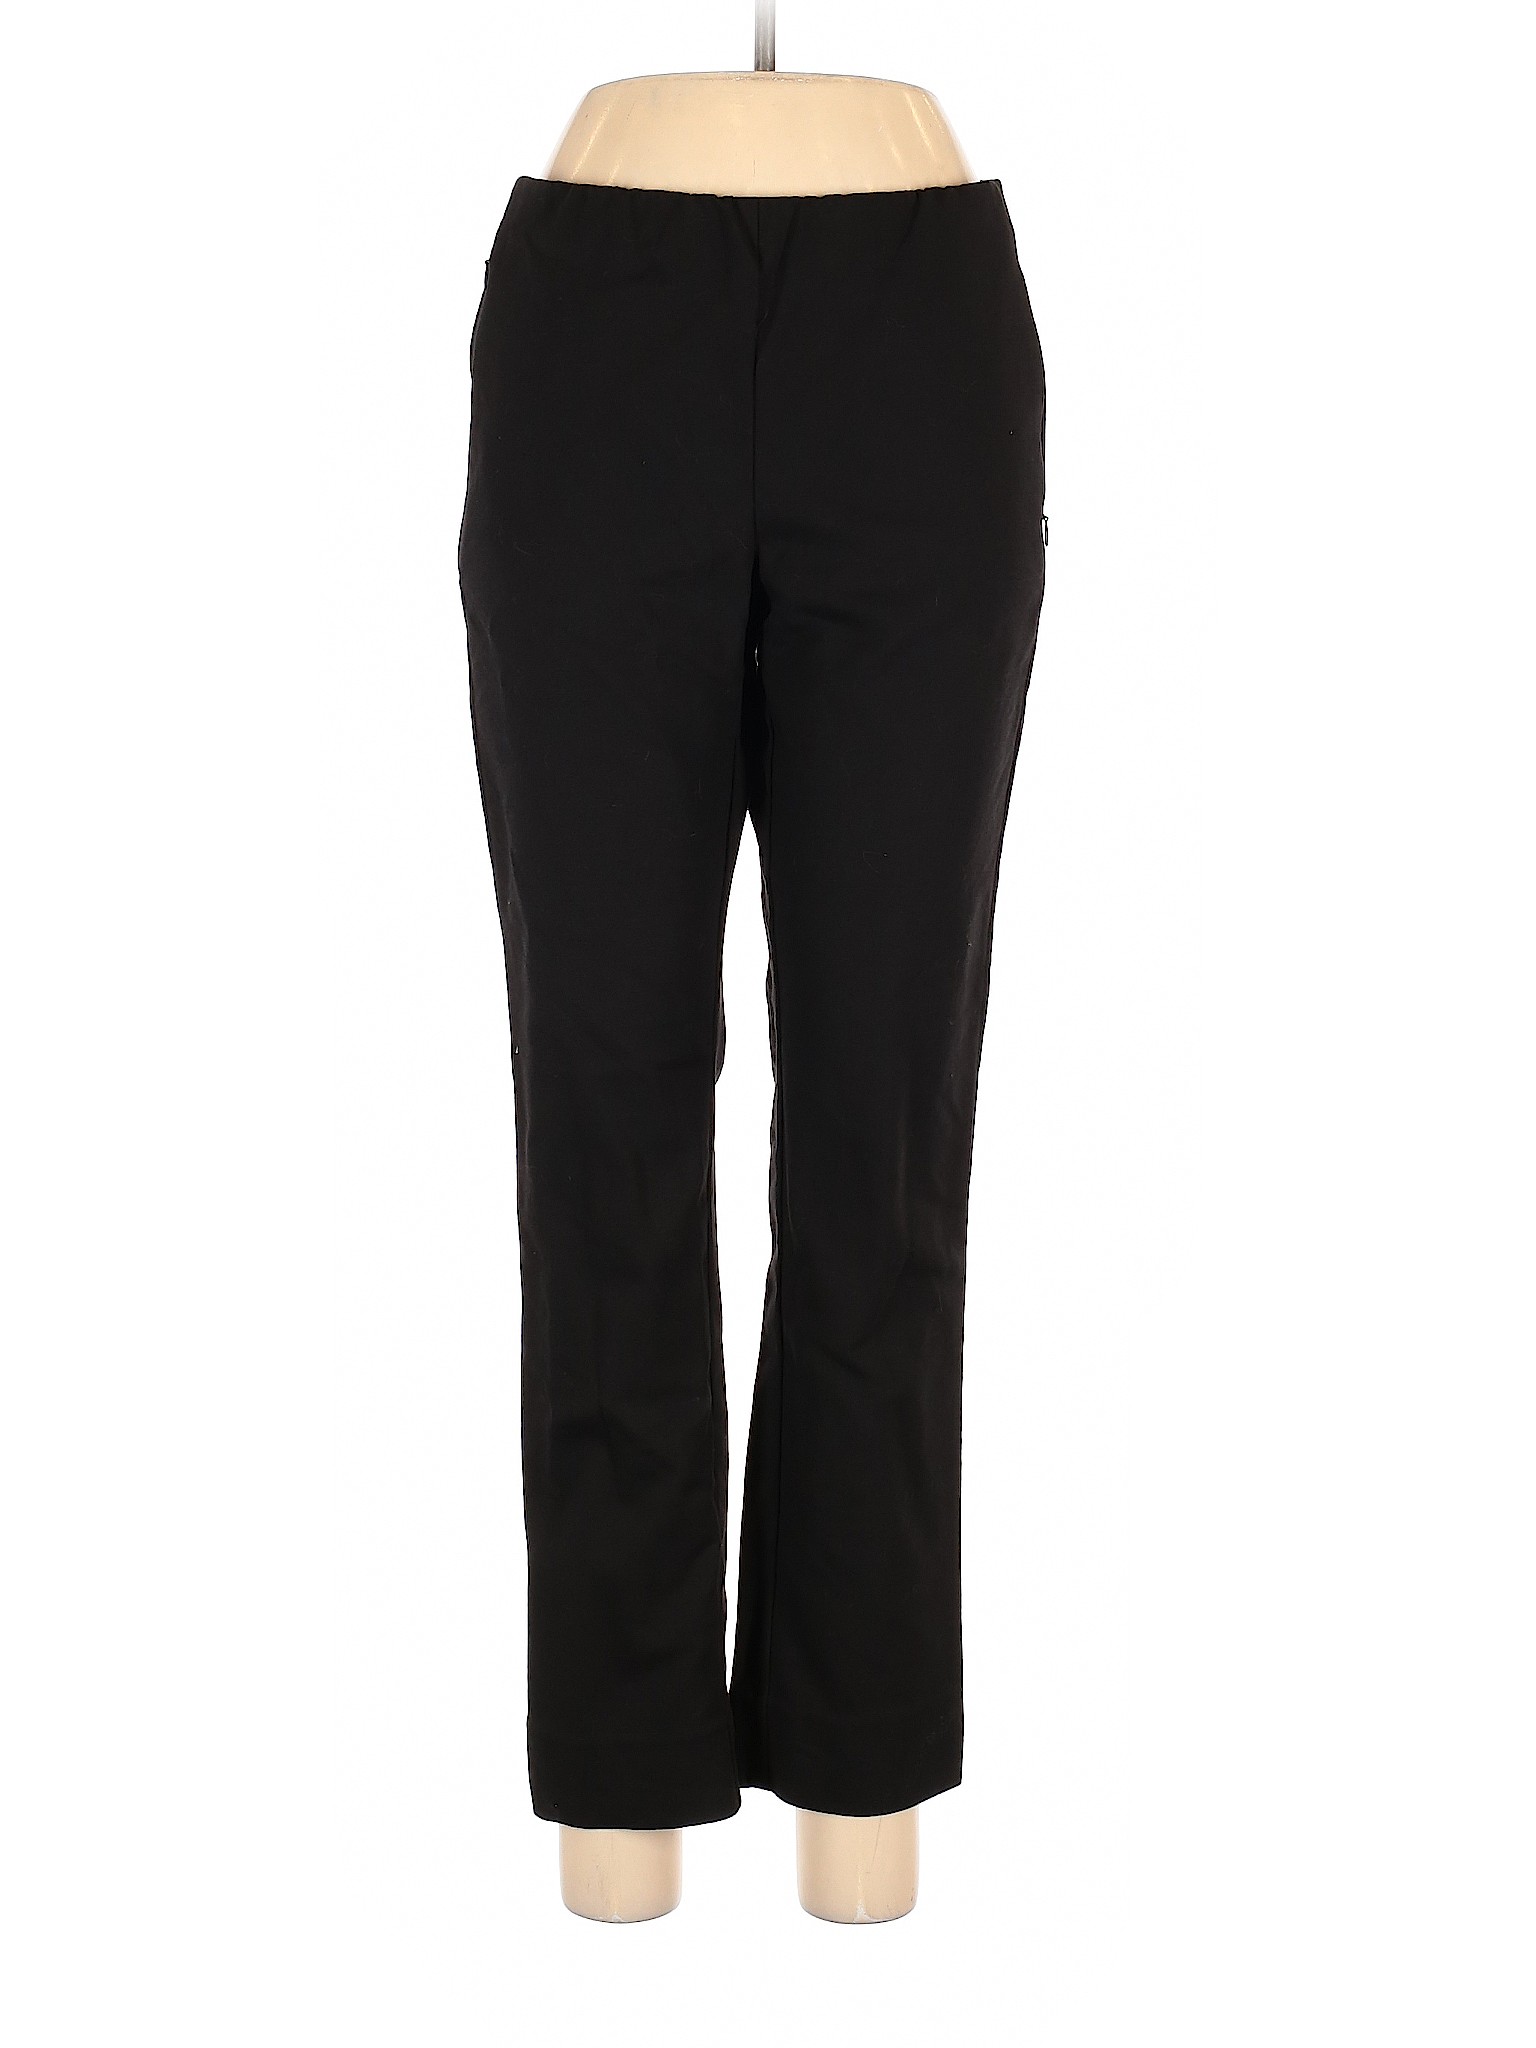 J.jill Women Black Casual Pants 8 | eBay